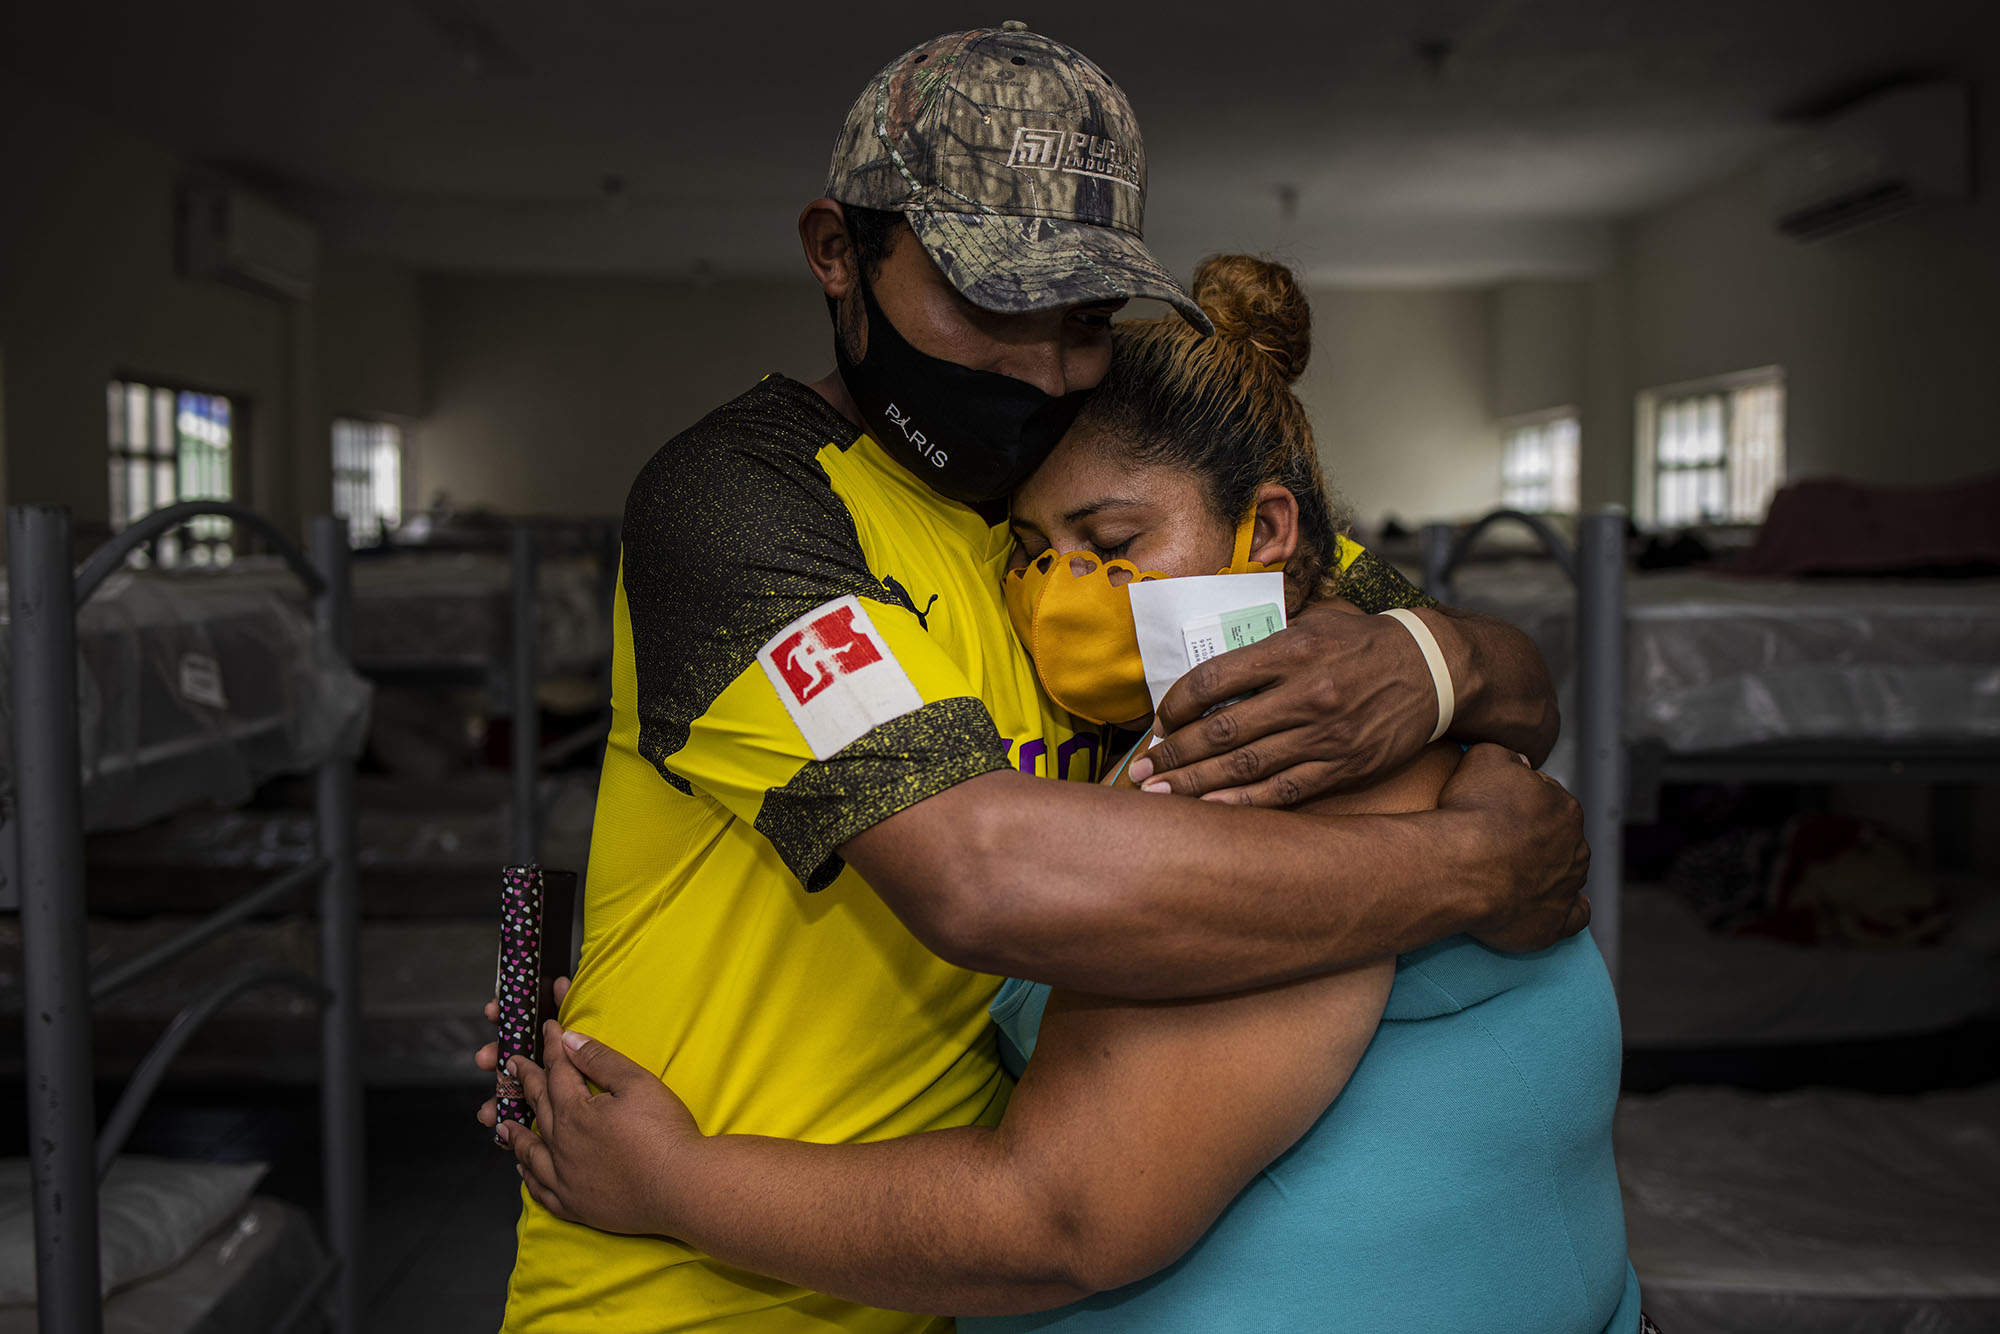 Reynosa, région de Tamaulipas, Mexique. Le 4 mai 2021. Cindy Caceres, 28 ans et Carlos Roberto Tunez, 27 ans. Ils demandent l'asile politique aux Etats-Unis après avoir fui le Honduras pour sauver leur vie.